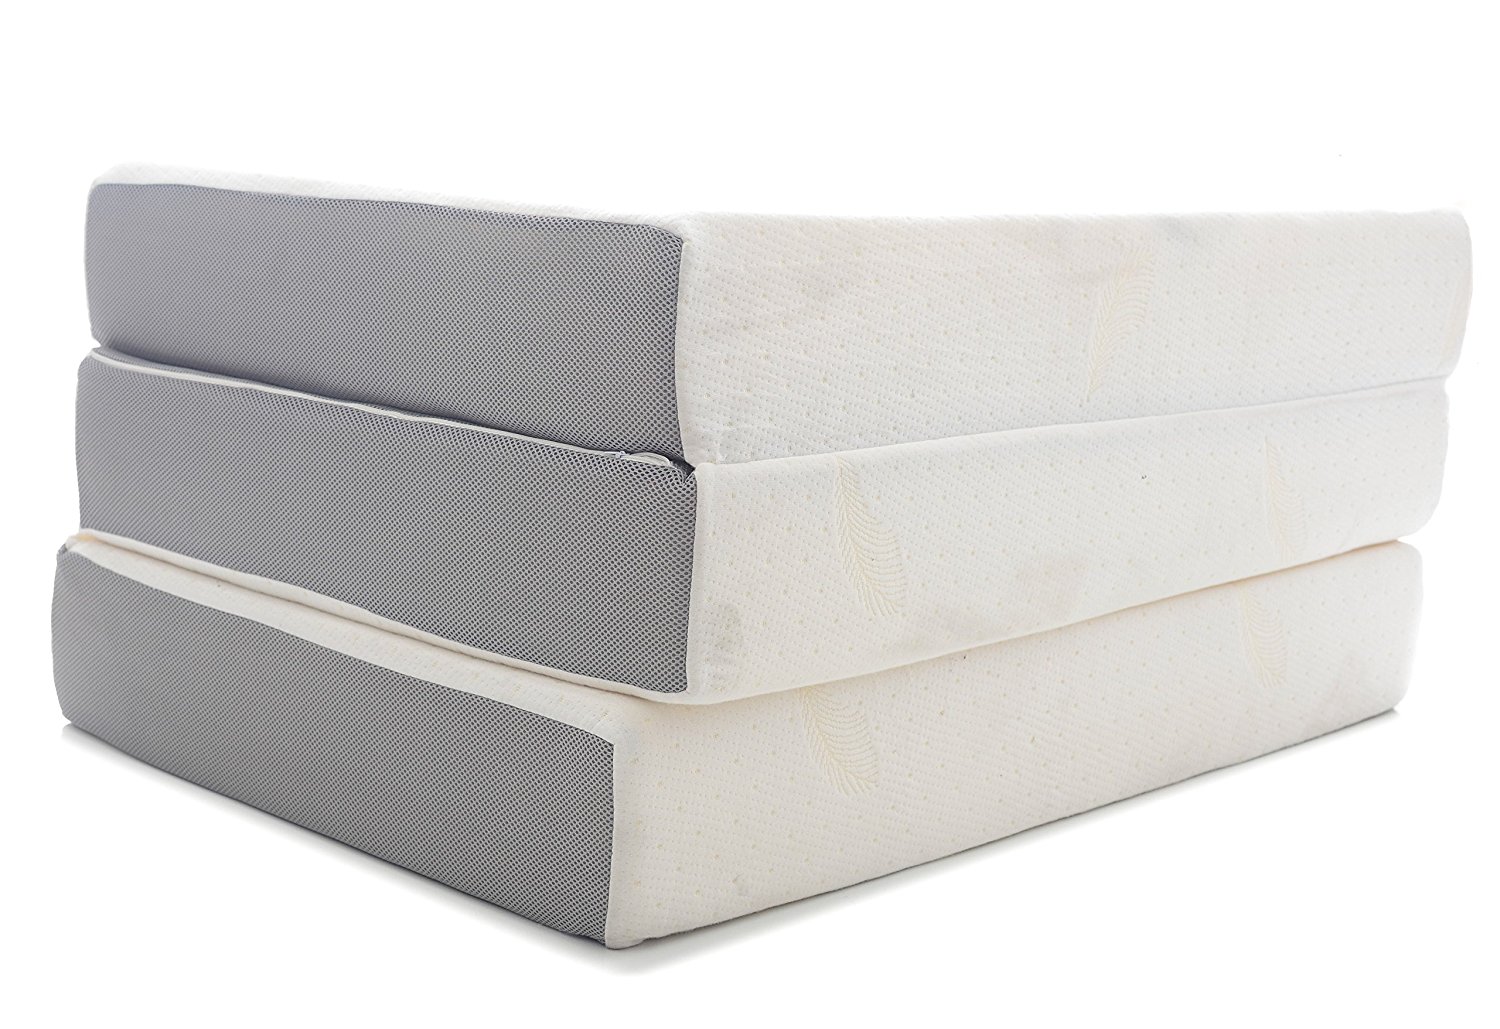 6 inch full size memory foam mattress